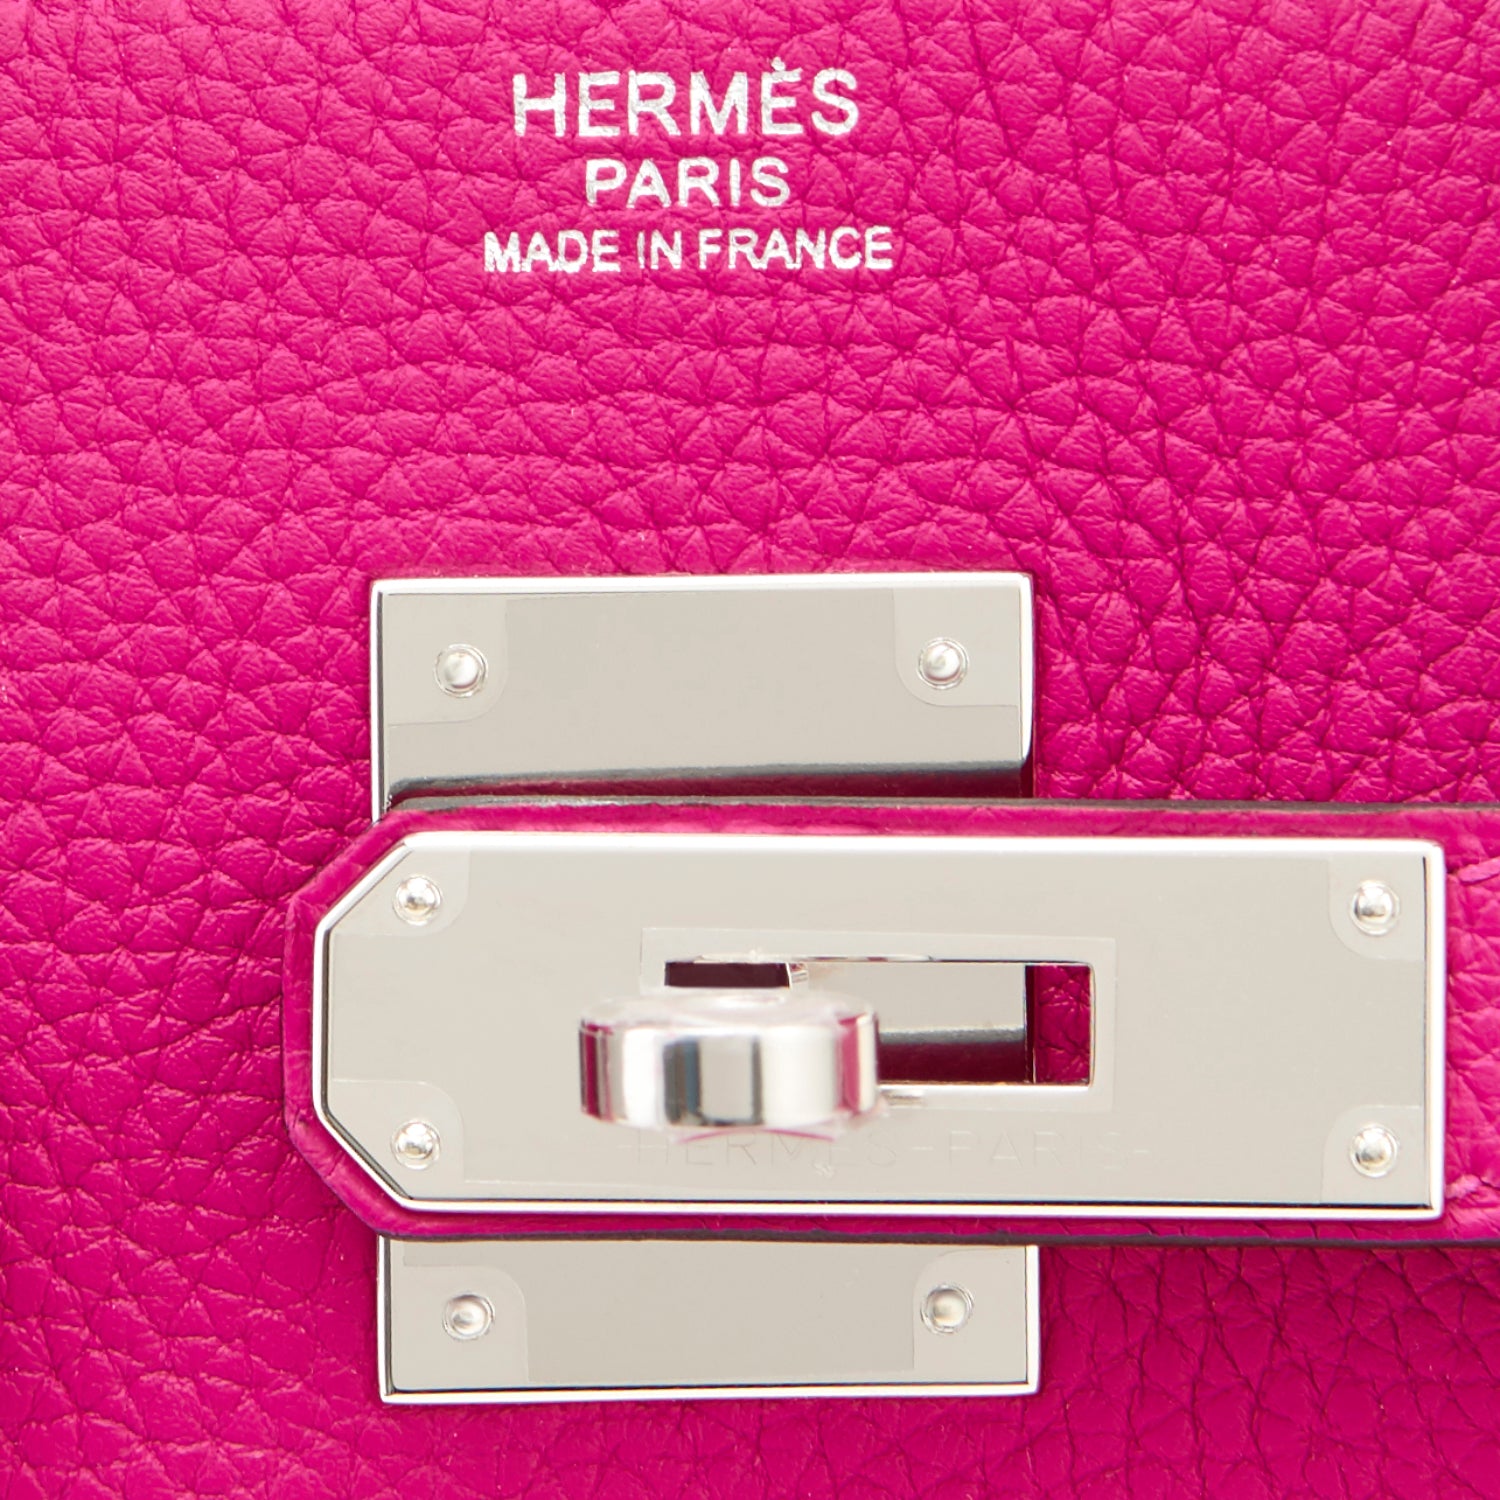 Hermes Birkin 30 Bag Rose Pourpre Pink Togo Palladium • MIGHTYCHIC • 